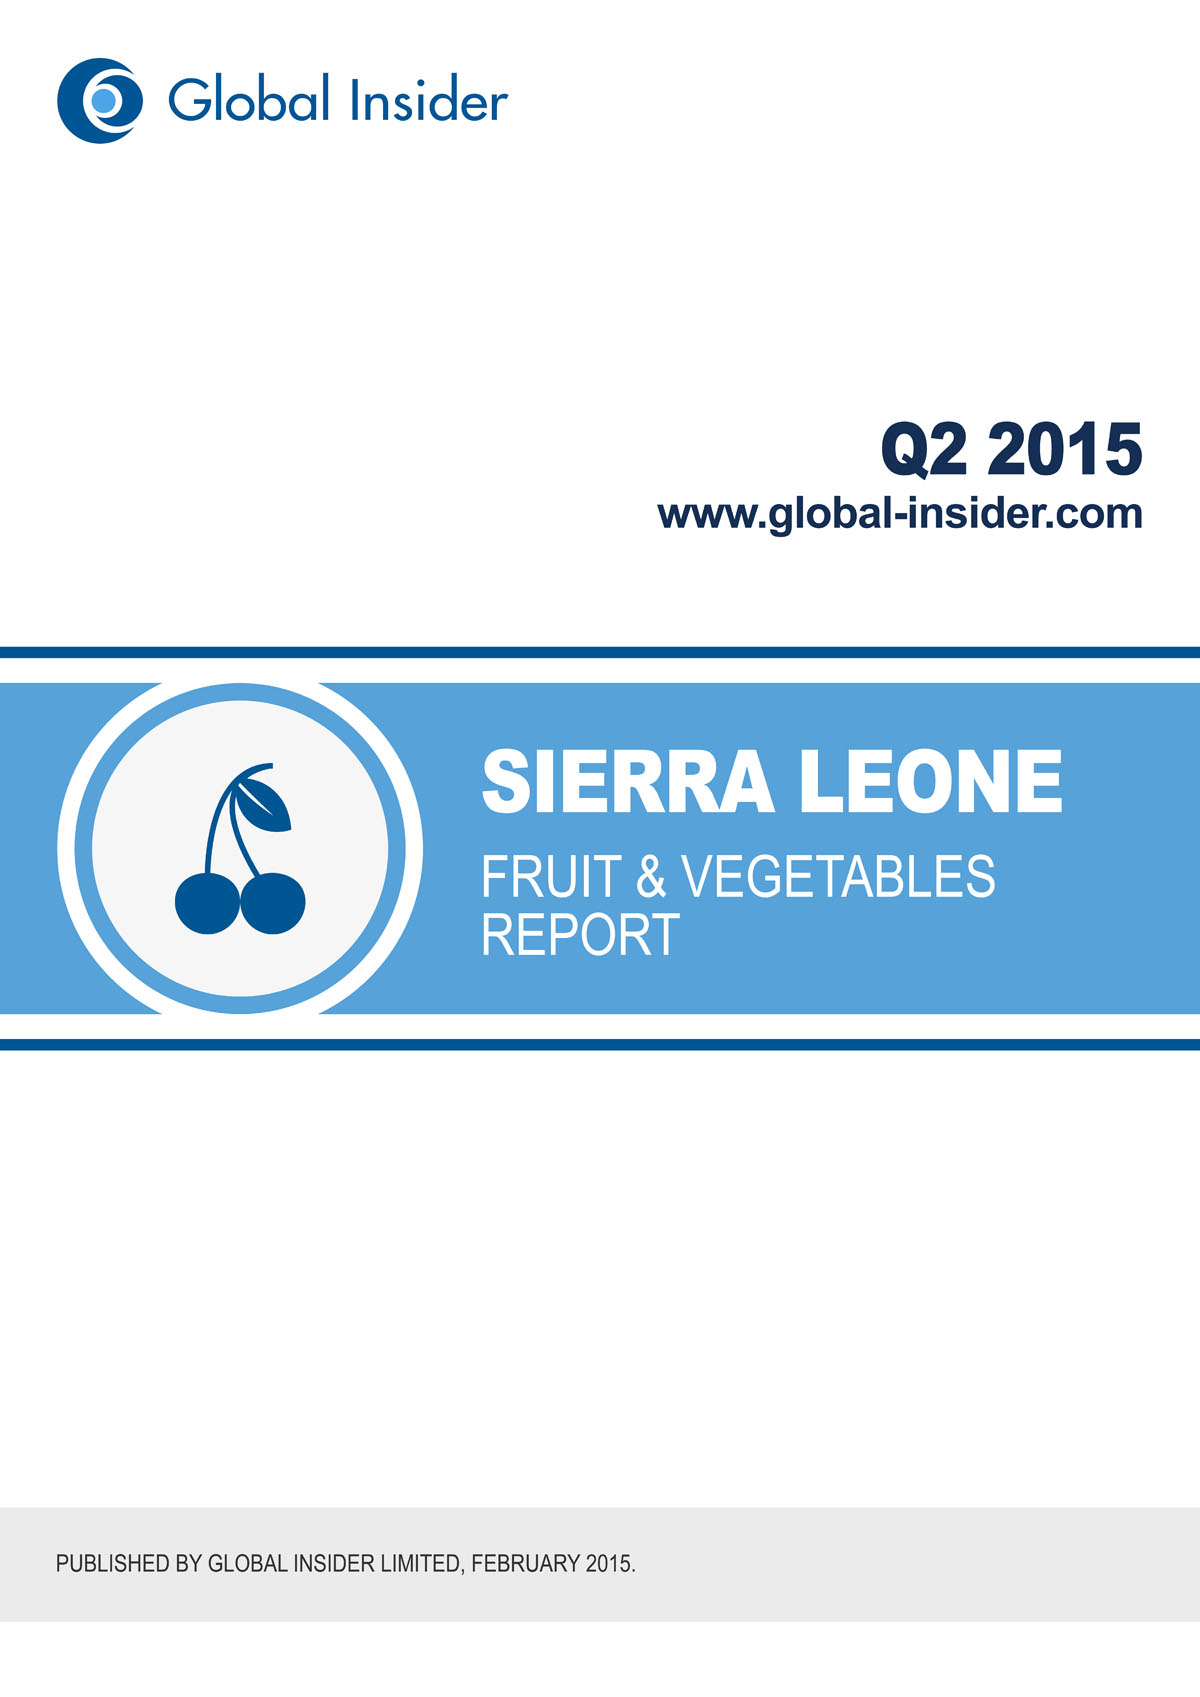 Sierra Leone Fruit & Vegetables Report